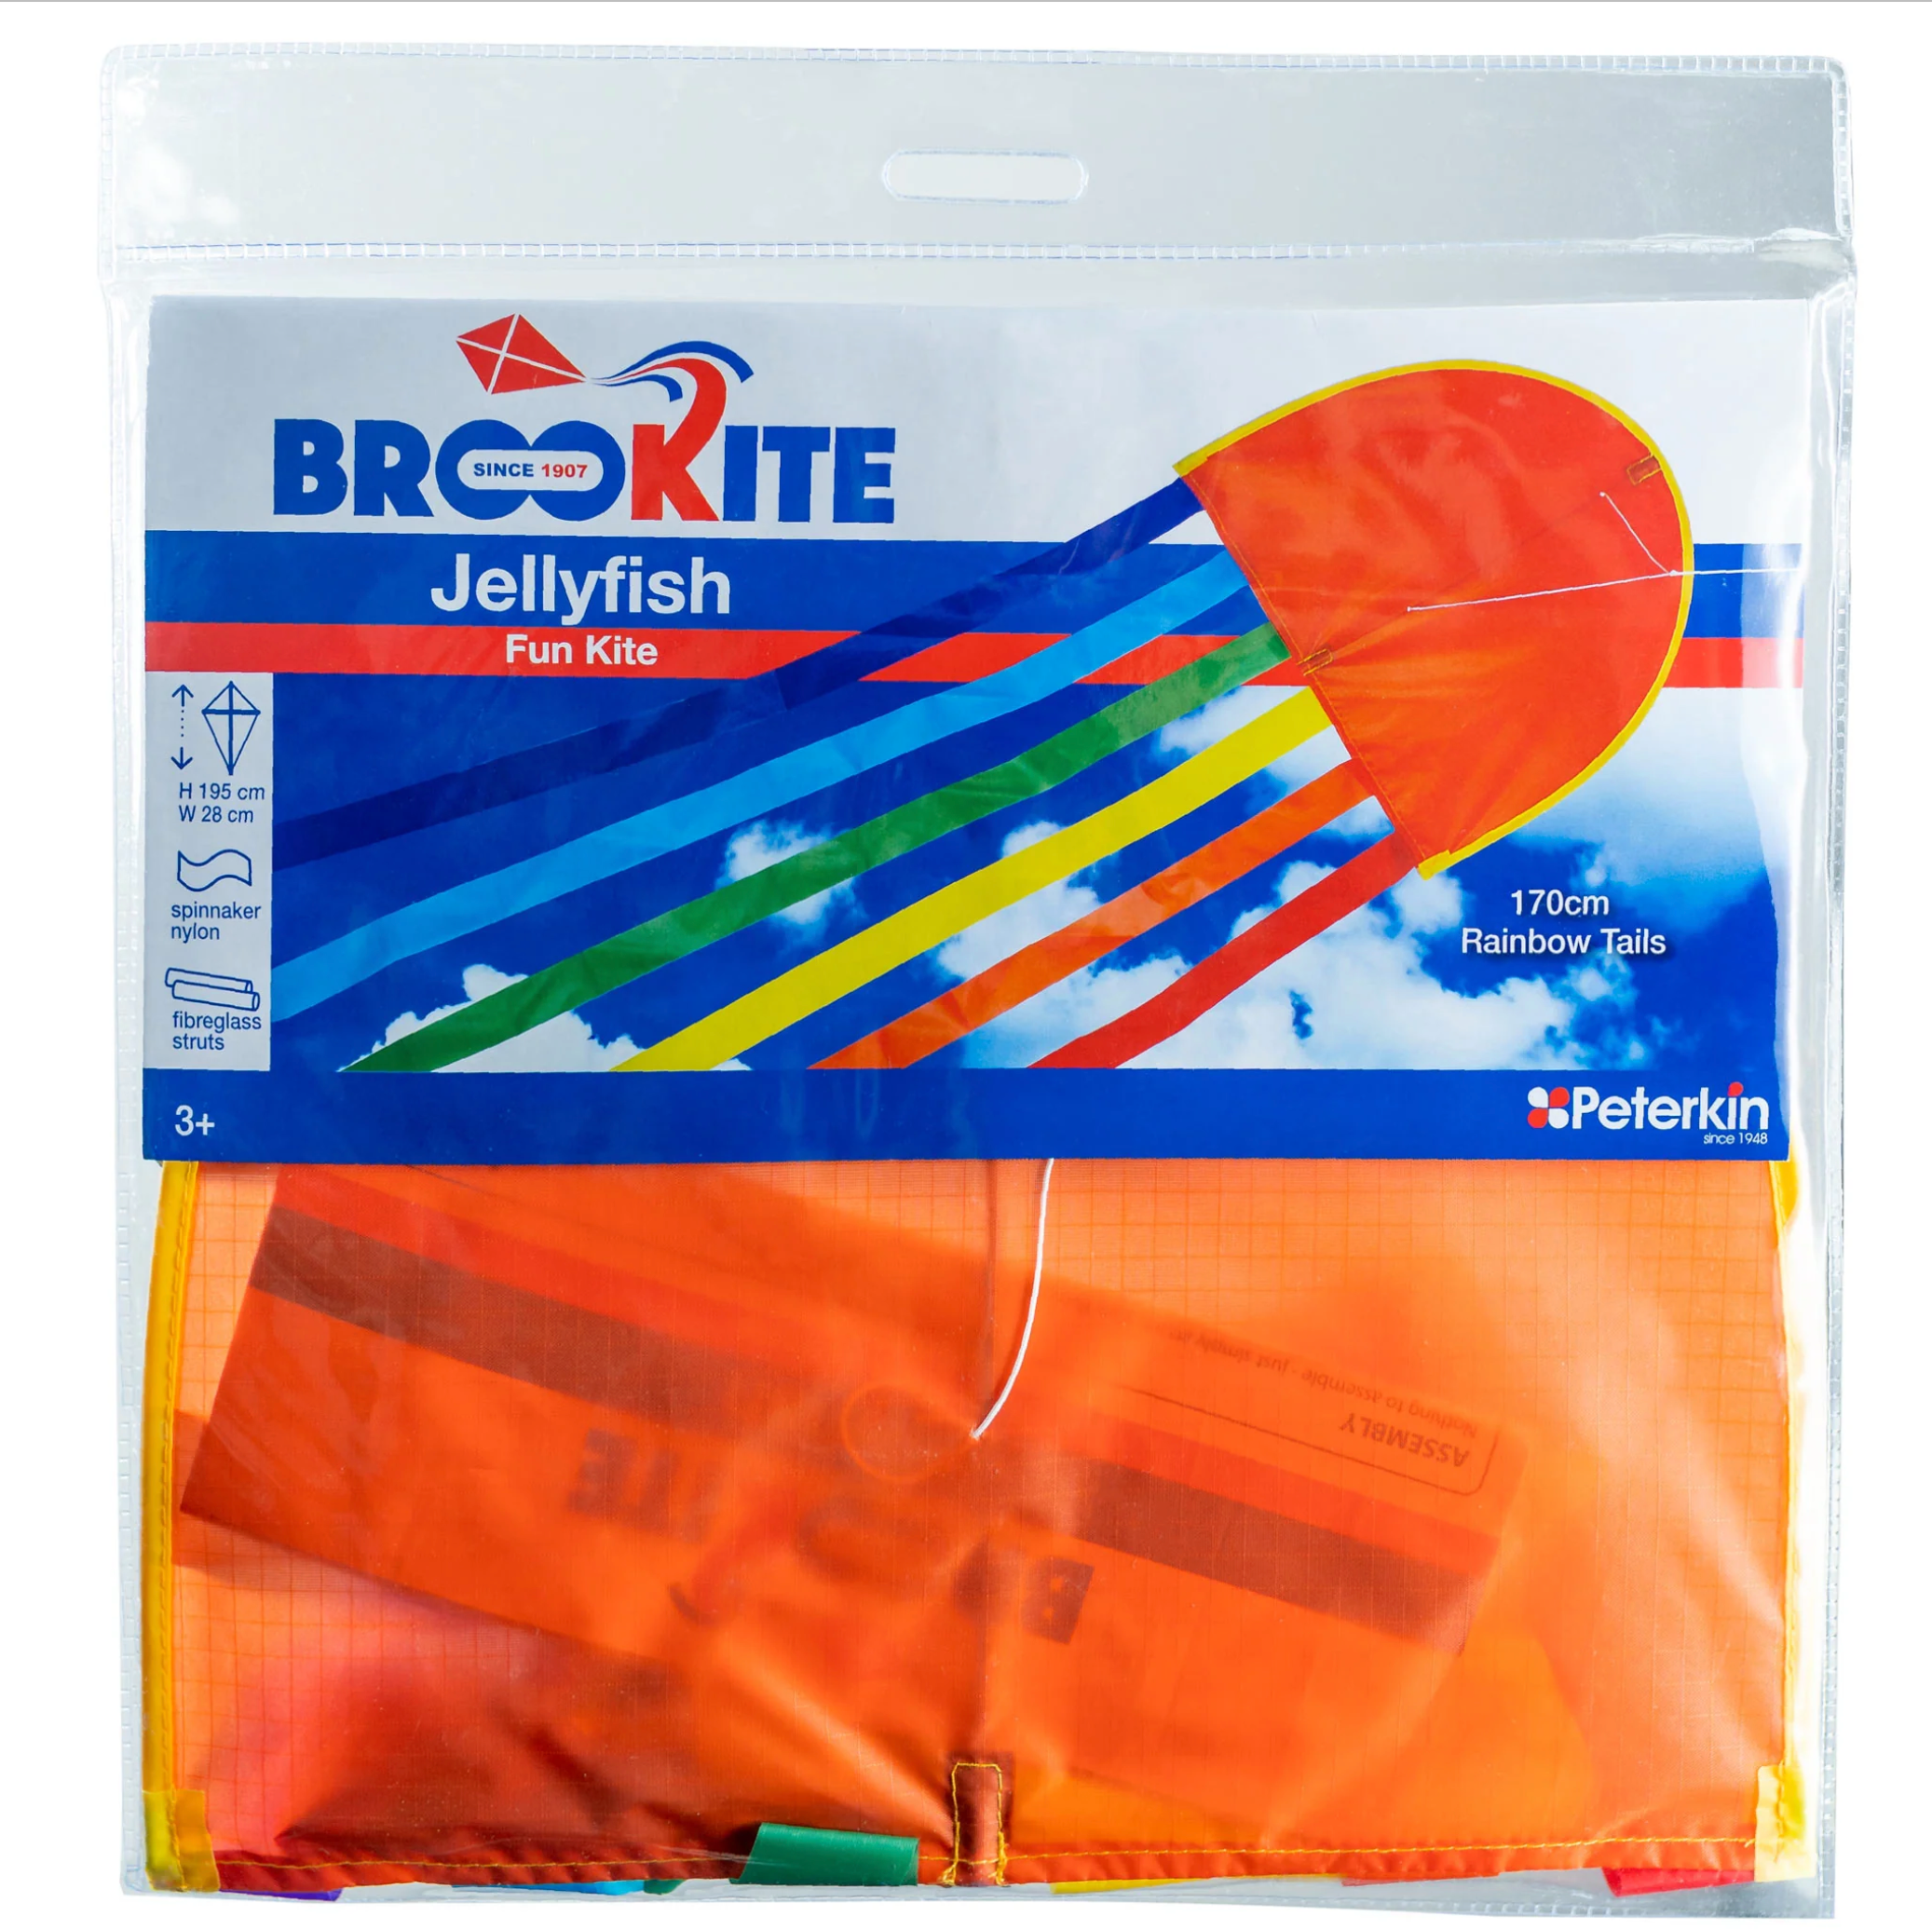 JellyFish Kite